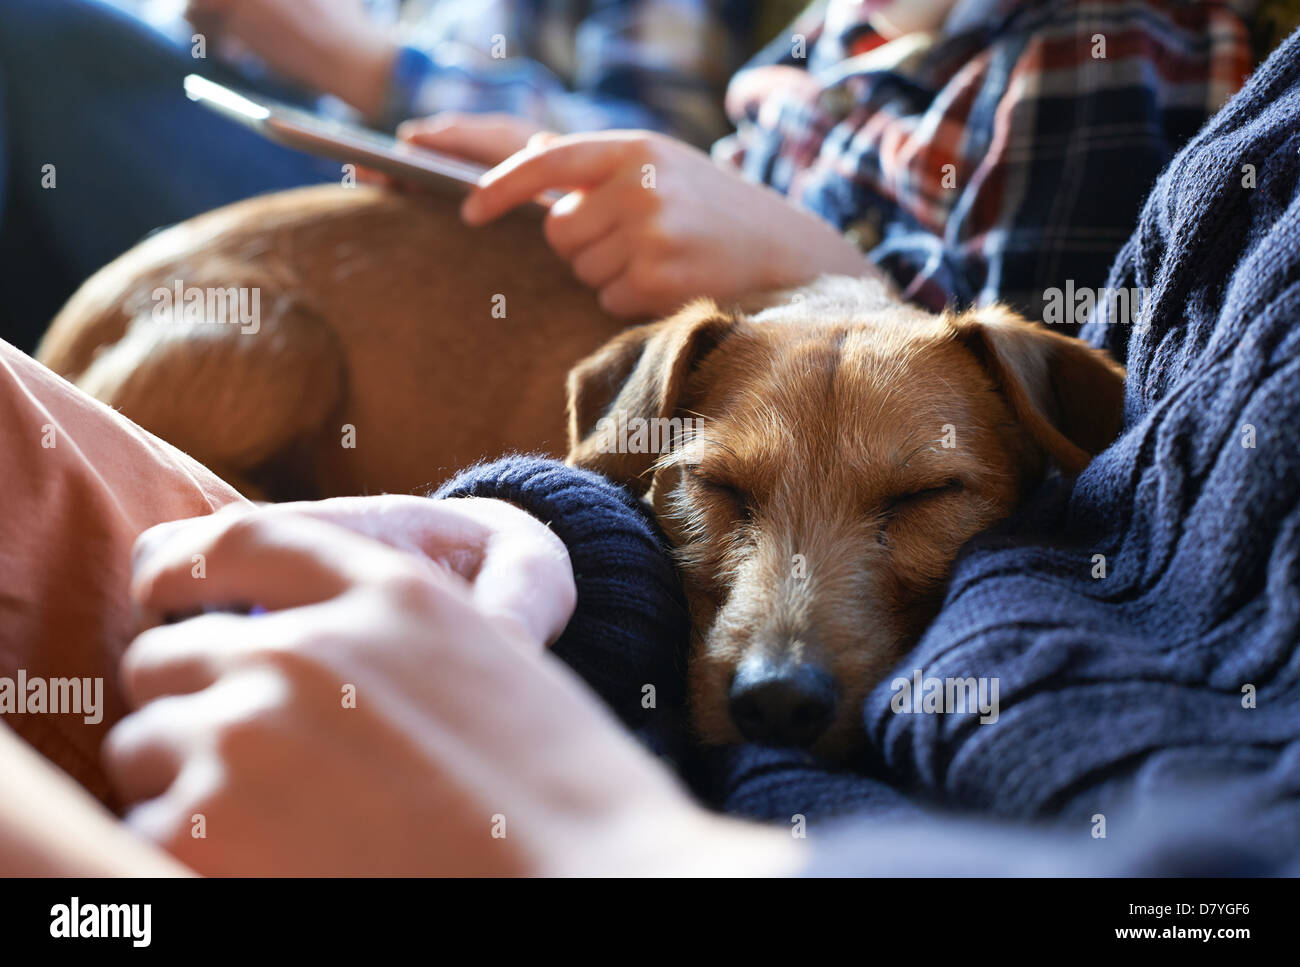 Dog sleeping on owners’ laps Stock Photo